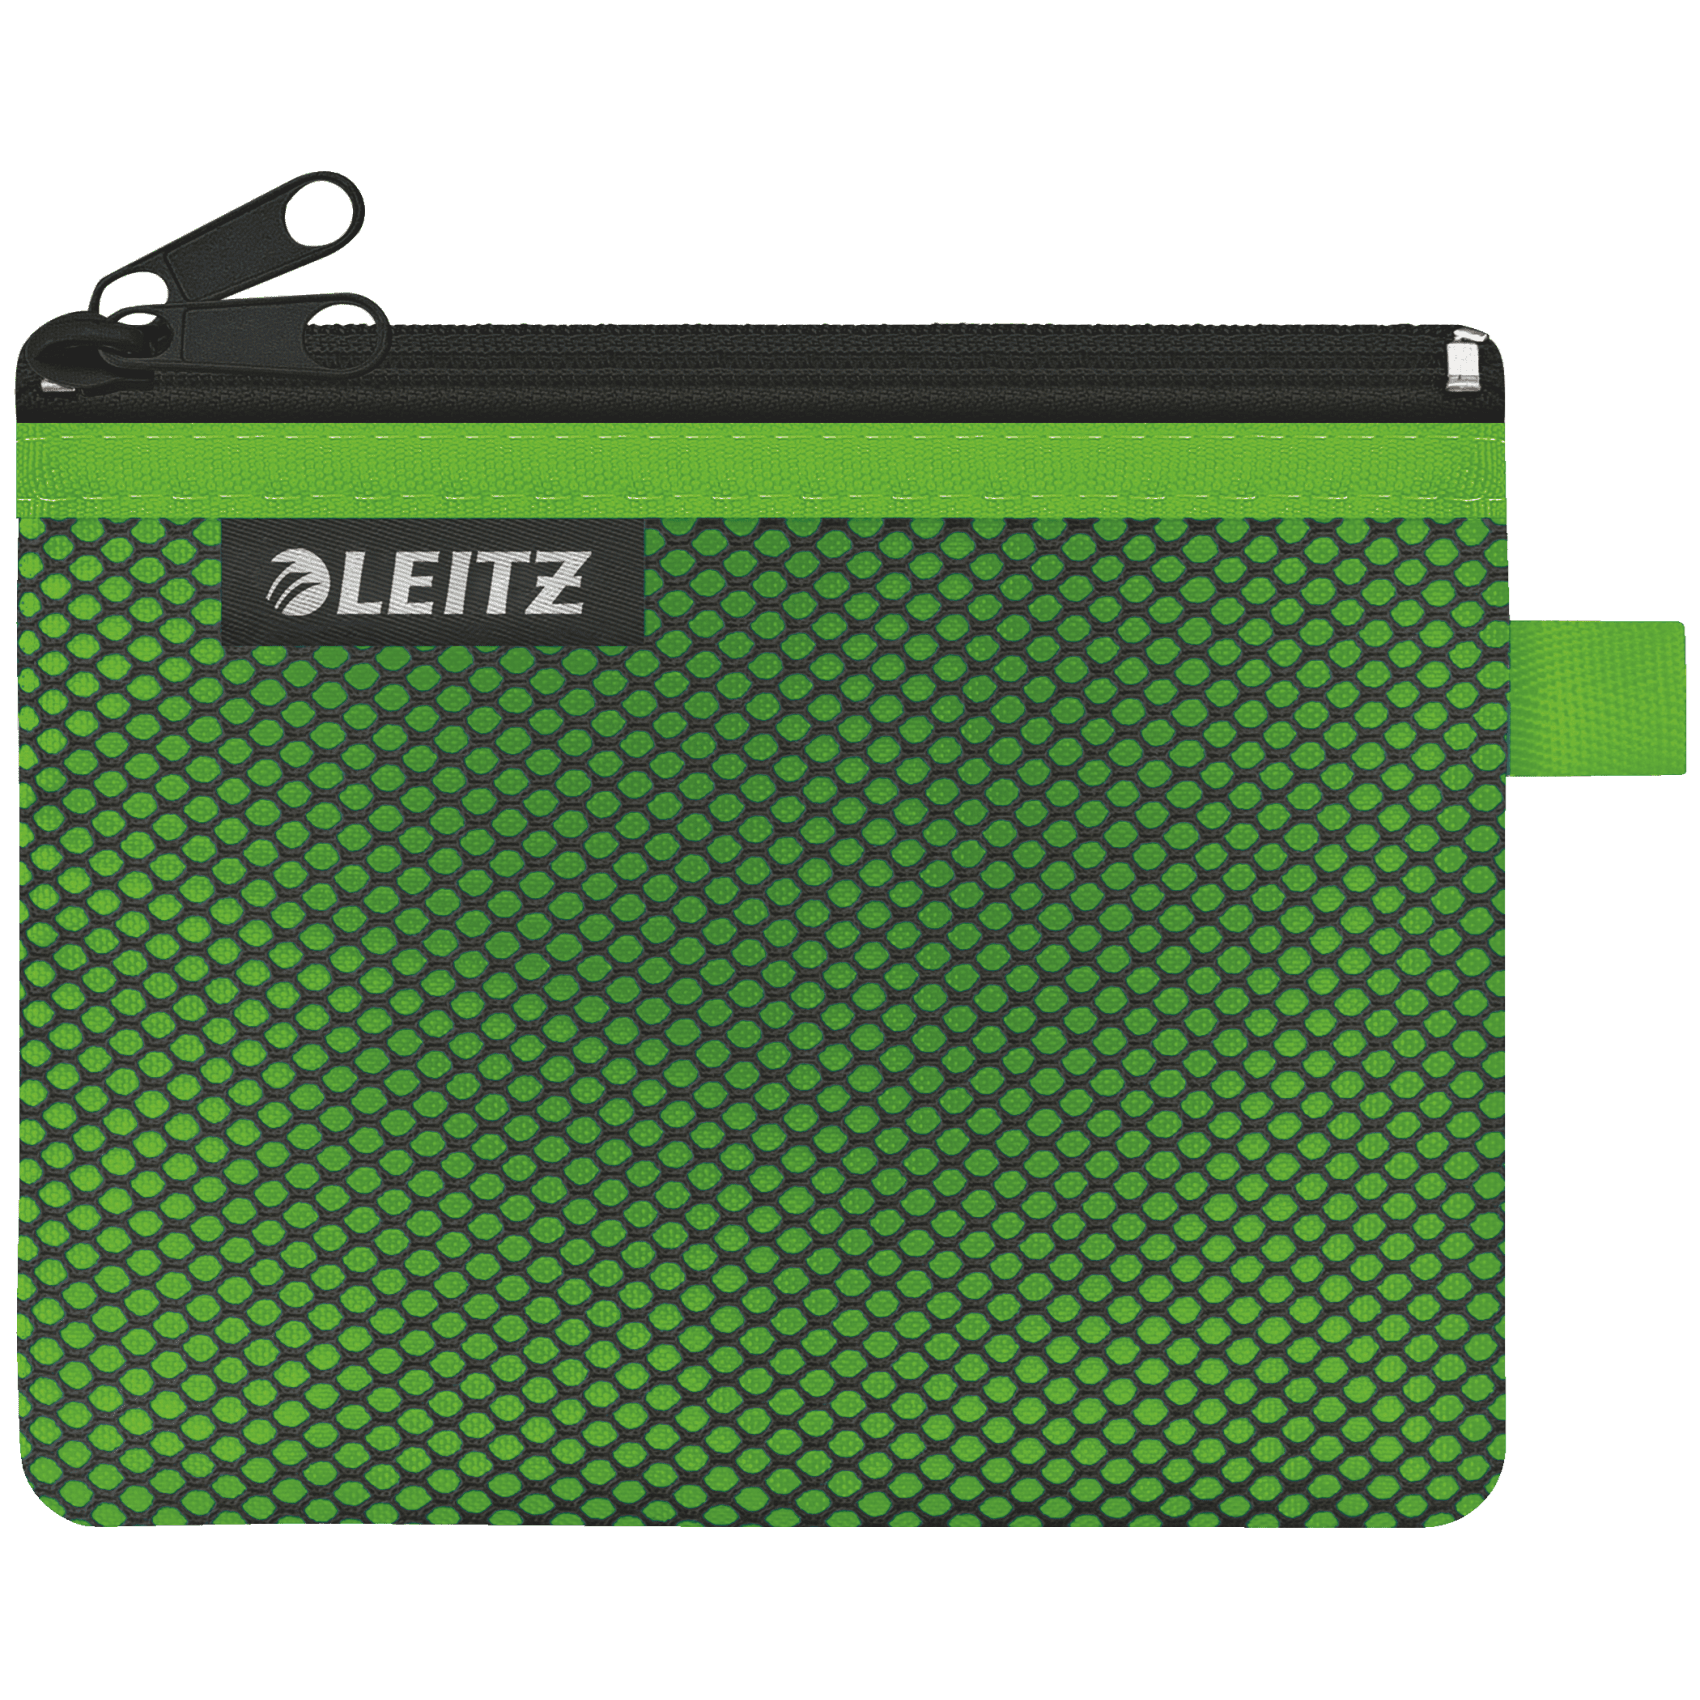 Dvojitá textilní kapsa Leitz Wow, velikost S, zelená